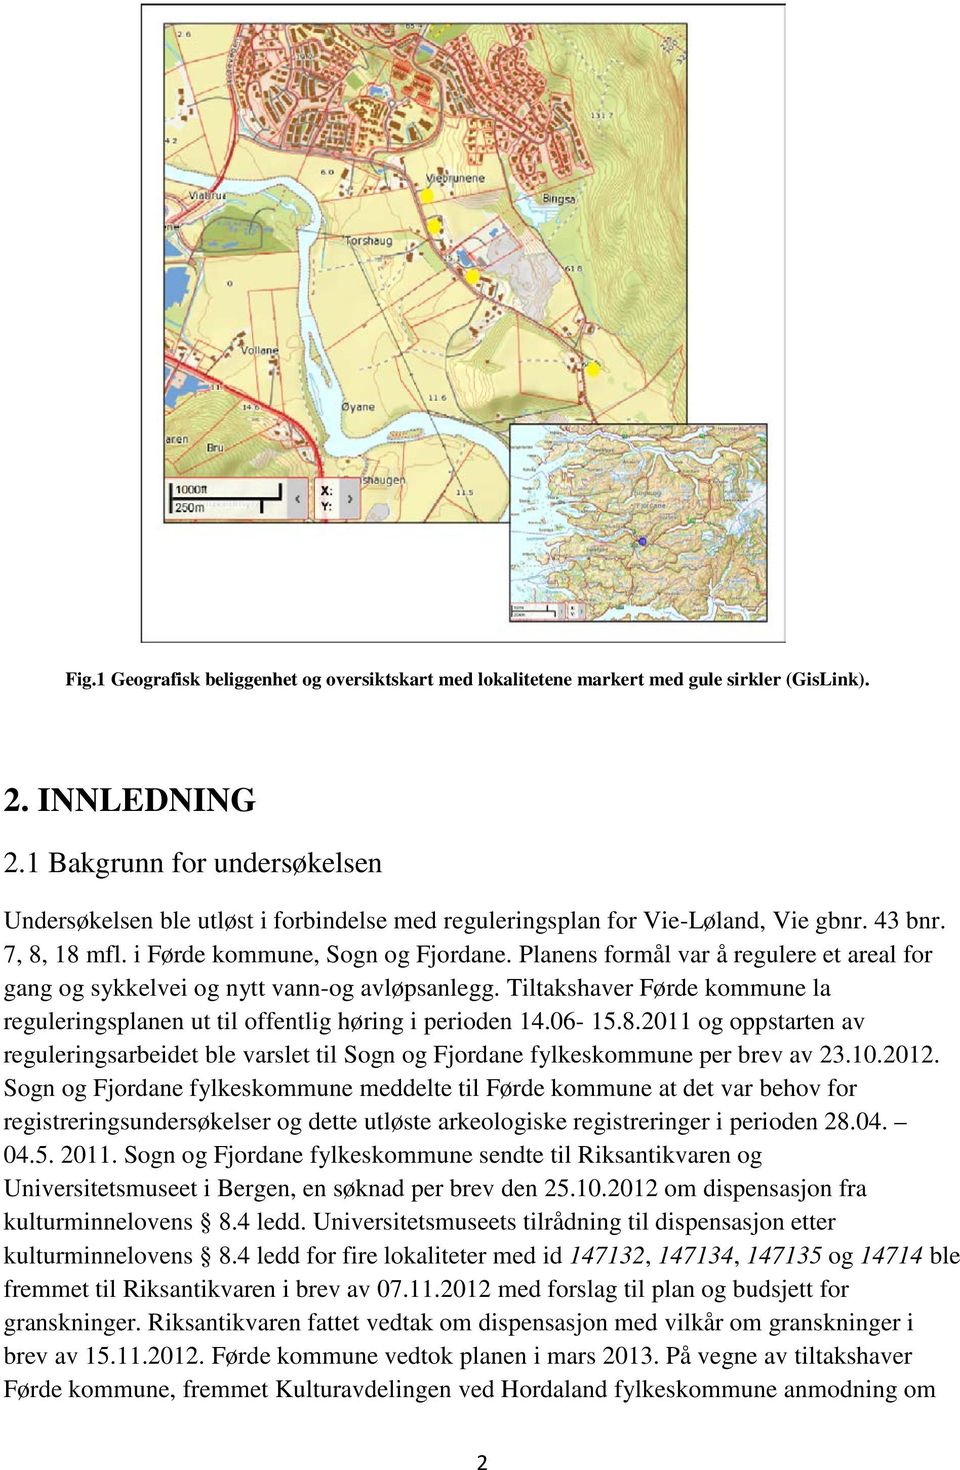 Planens formål var å regulere et areal for gang og sykkelvei og nytt vann-og avløpsanlegg. Tiltakshaver Førde kommune la reguleringsplanen ut til offentlig høring i perioden 14.06-15.8.